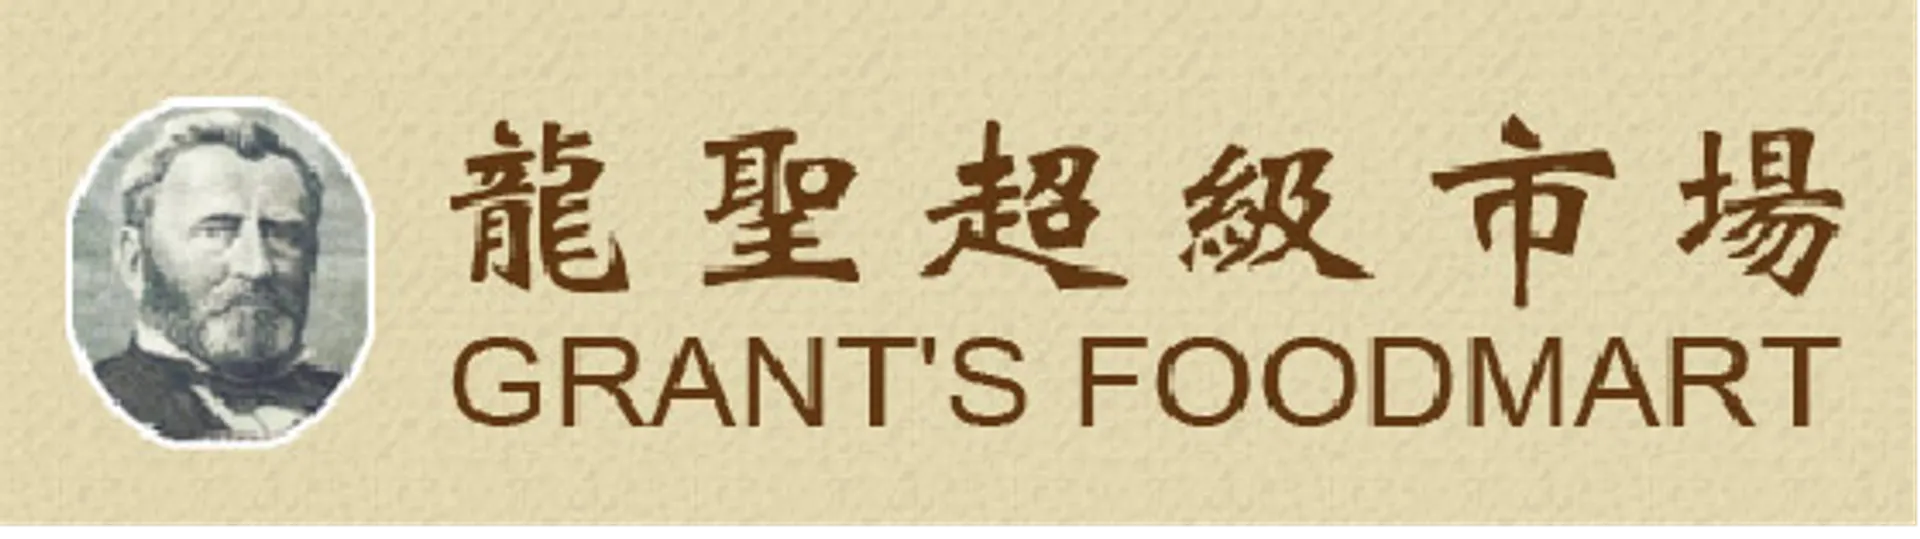 GRANT'S FOODMART logo